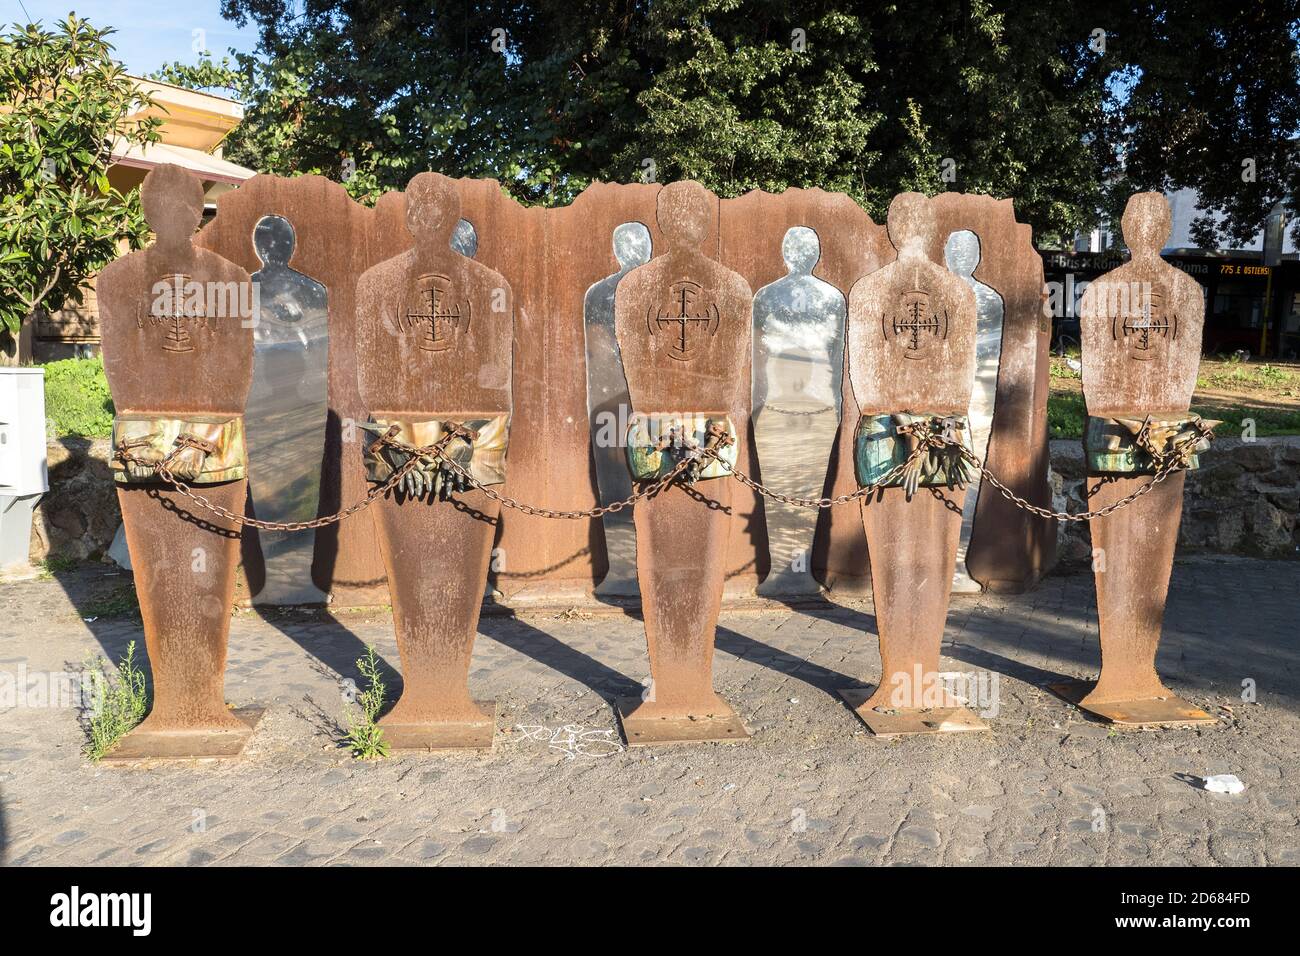 Monumento antifascista 'Tutti potenziali bersagli' (todos los posibles objetivos) dedicado a las víctimas del nazismo y el racismo en piazzale Ostiense - Roma, Italia Foto de stock